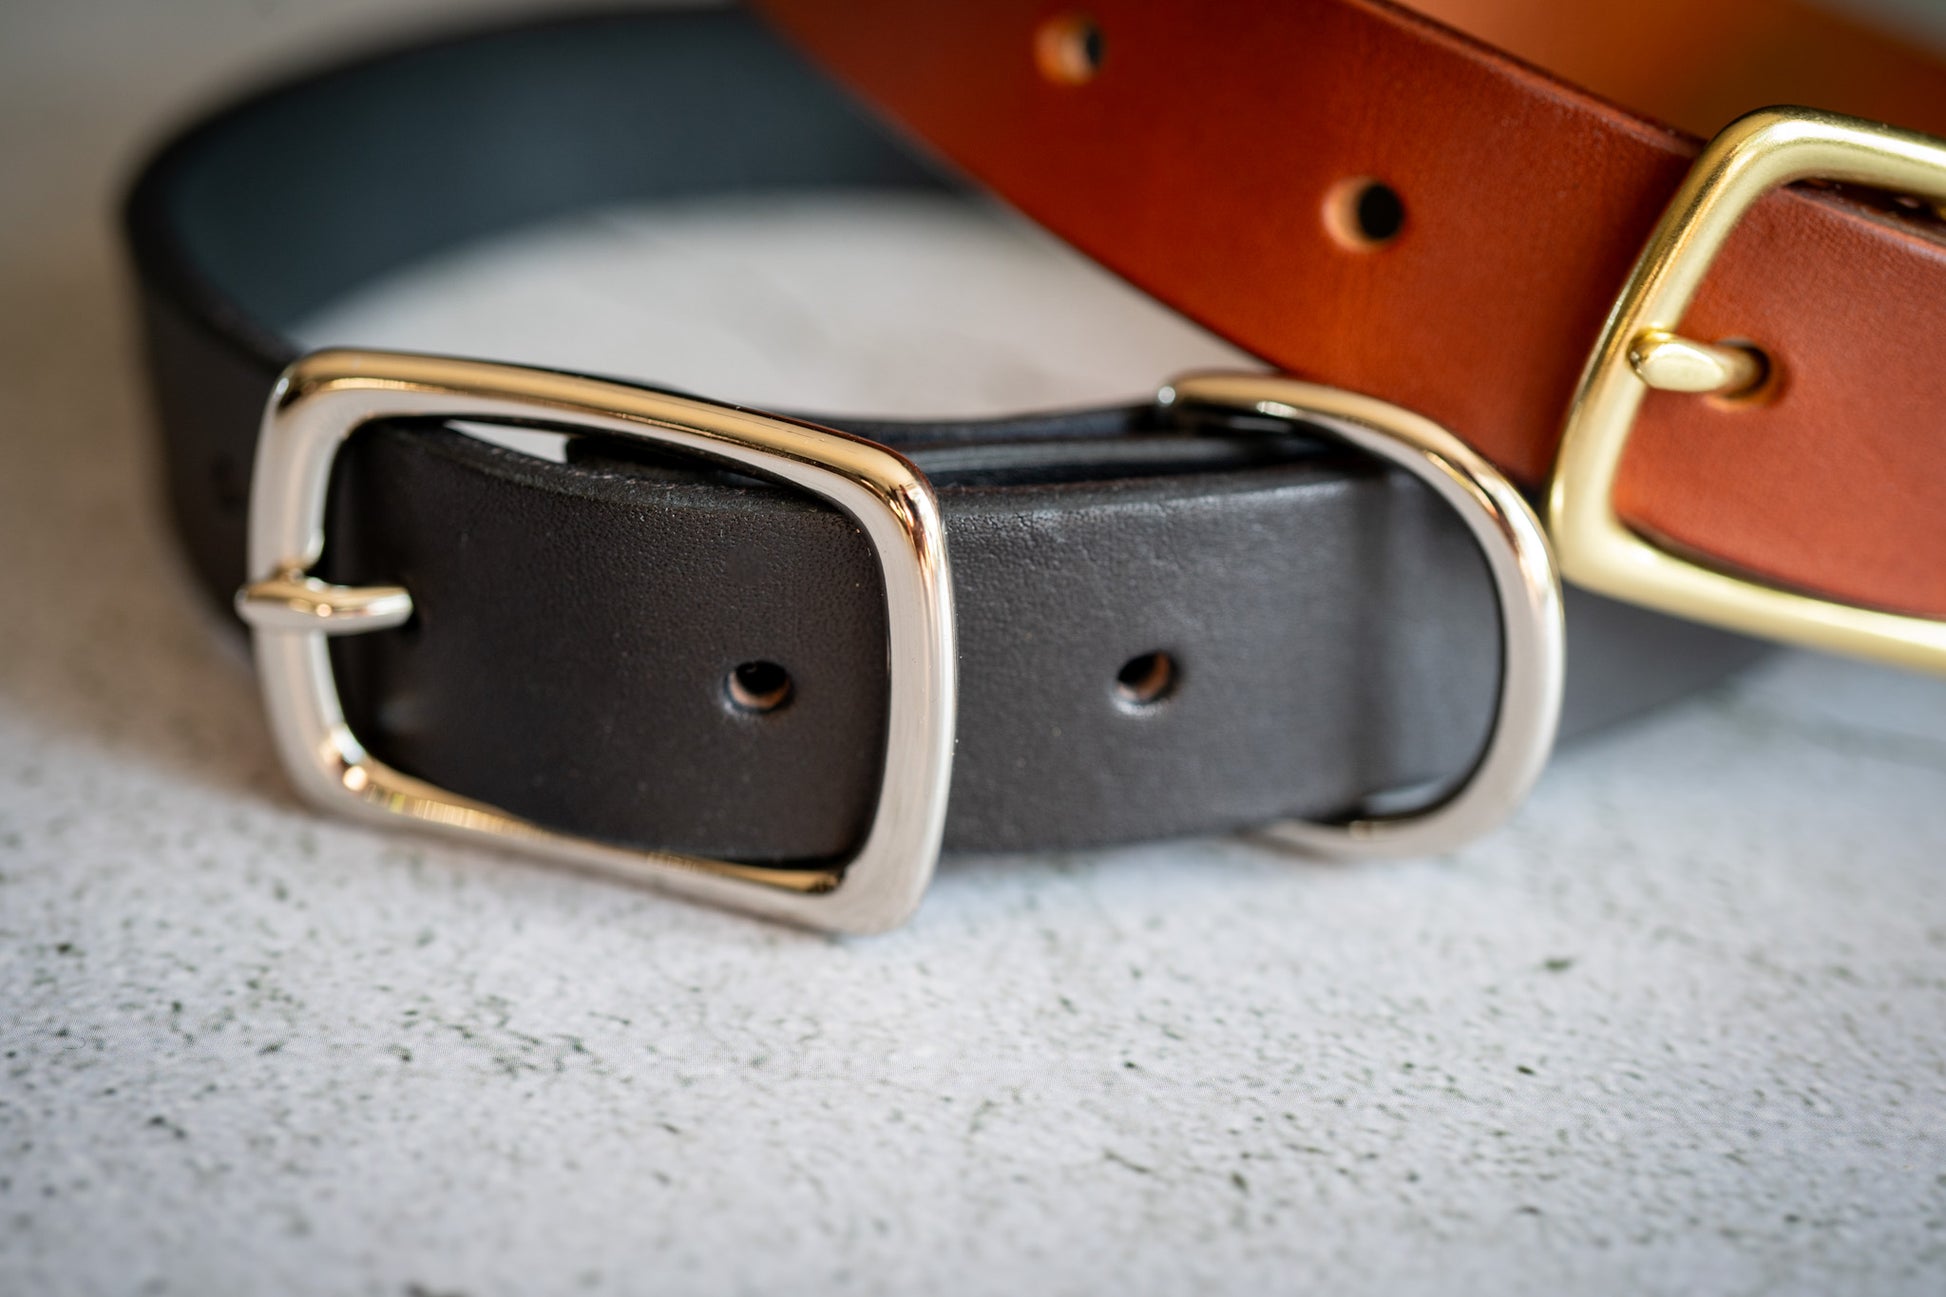 Close-up view of the nickel plated brass buckle of the black leather 1 inch dog collar. | Vue rapprochée de la boucle en nickel du collier pour chien en cuir noir 1 pouce.